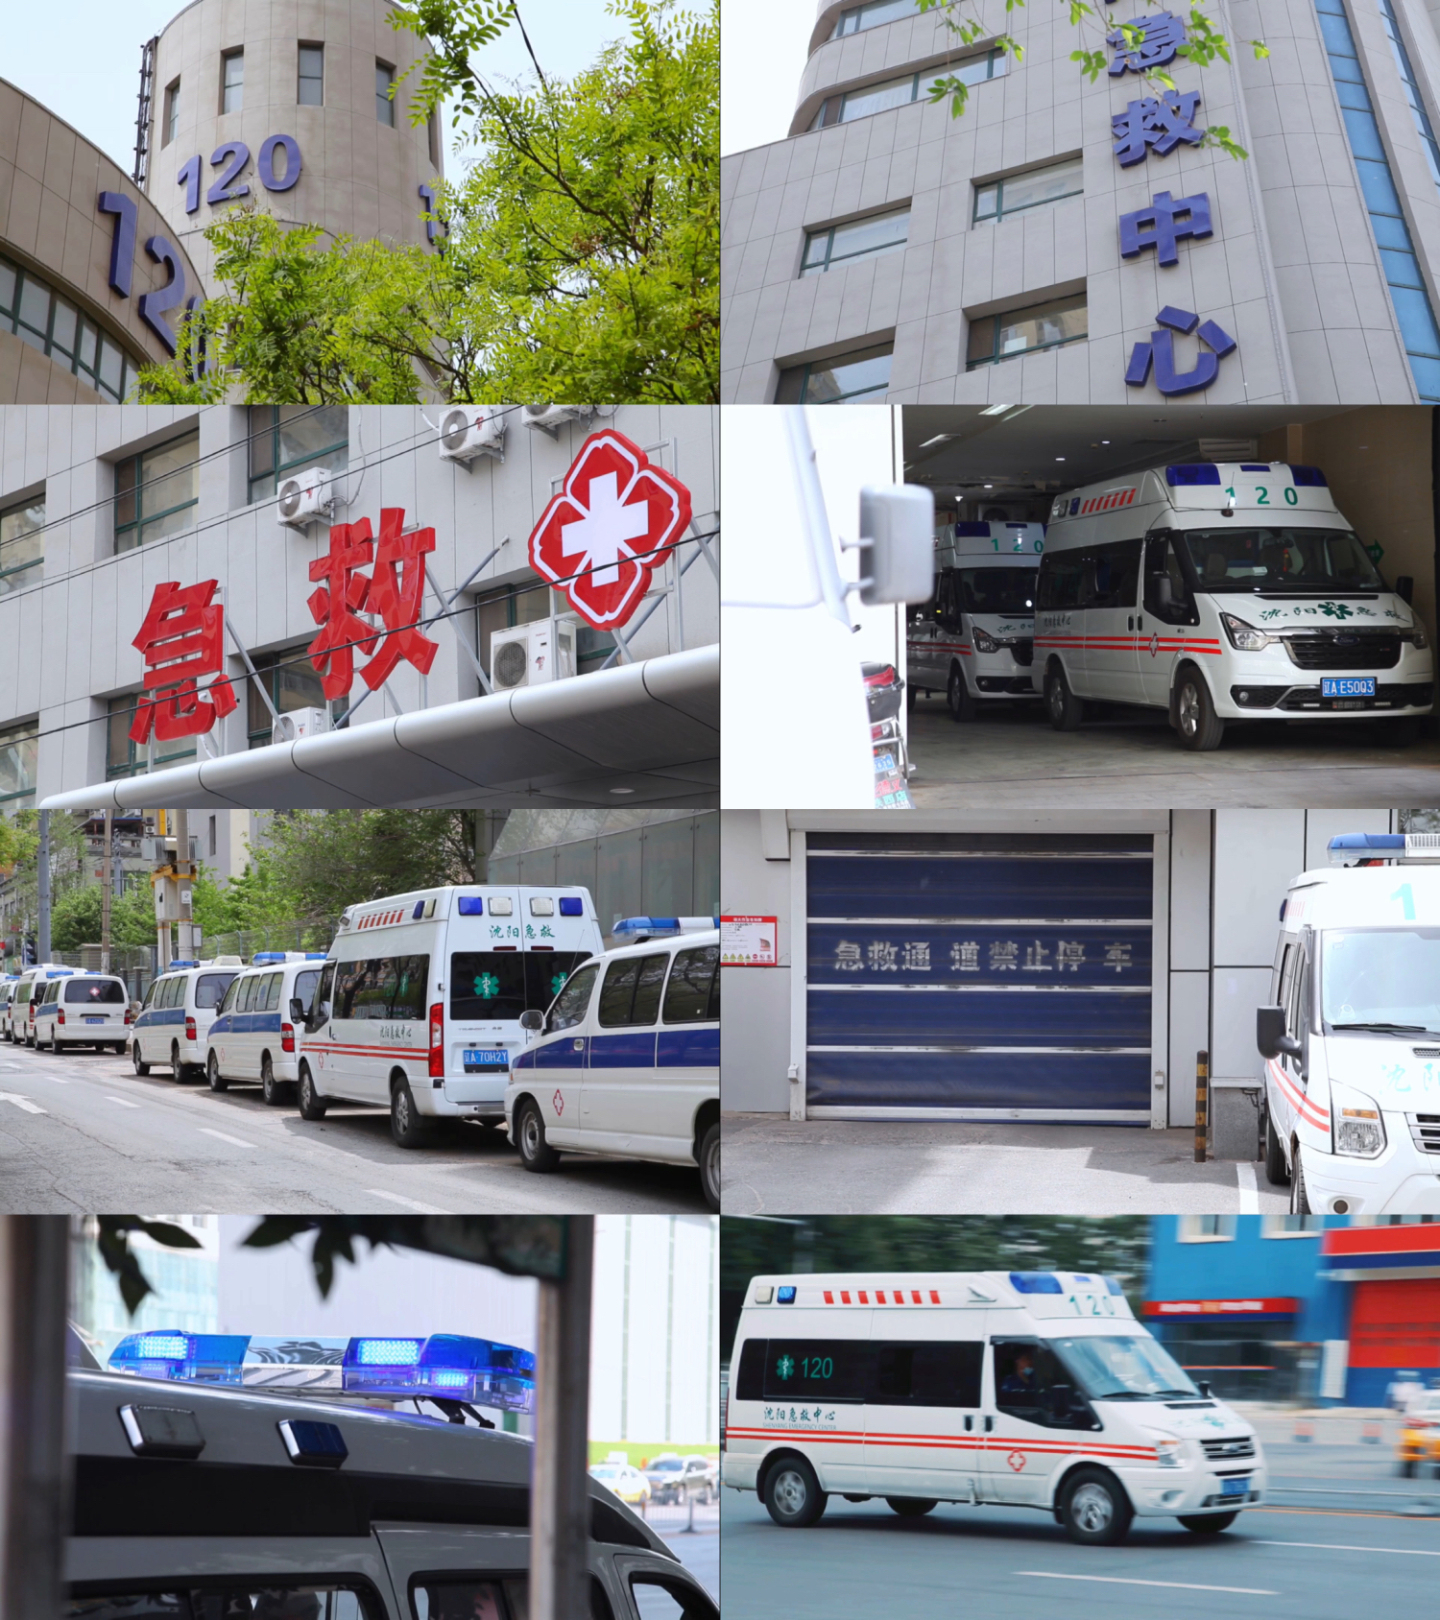 急救中心、120、急救、救护车